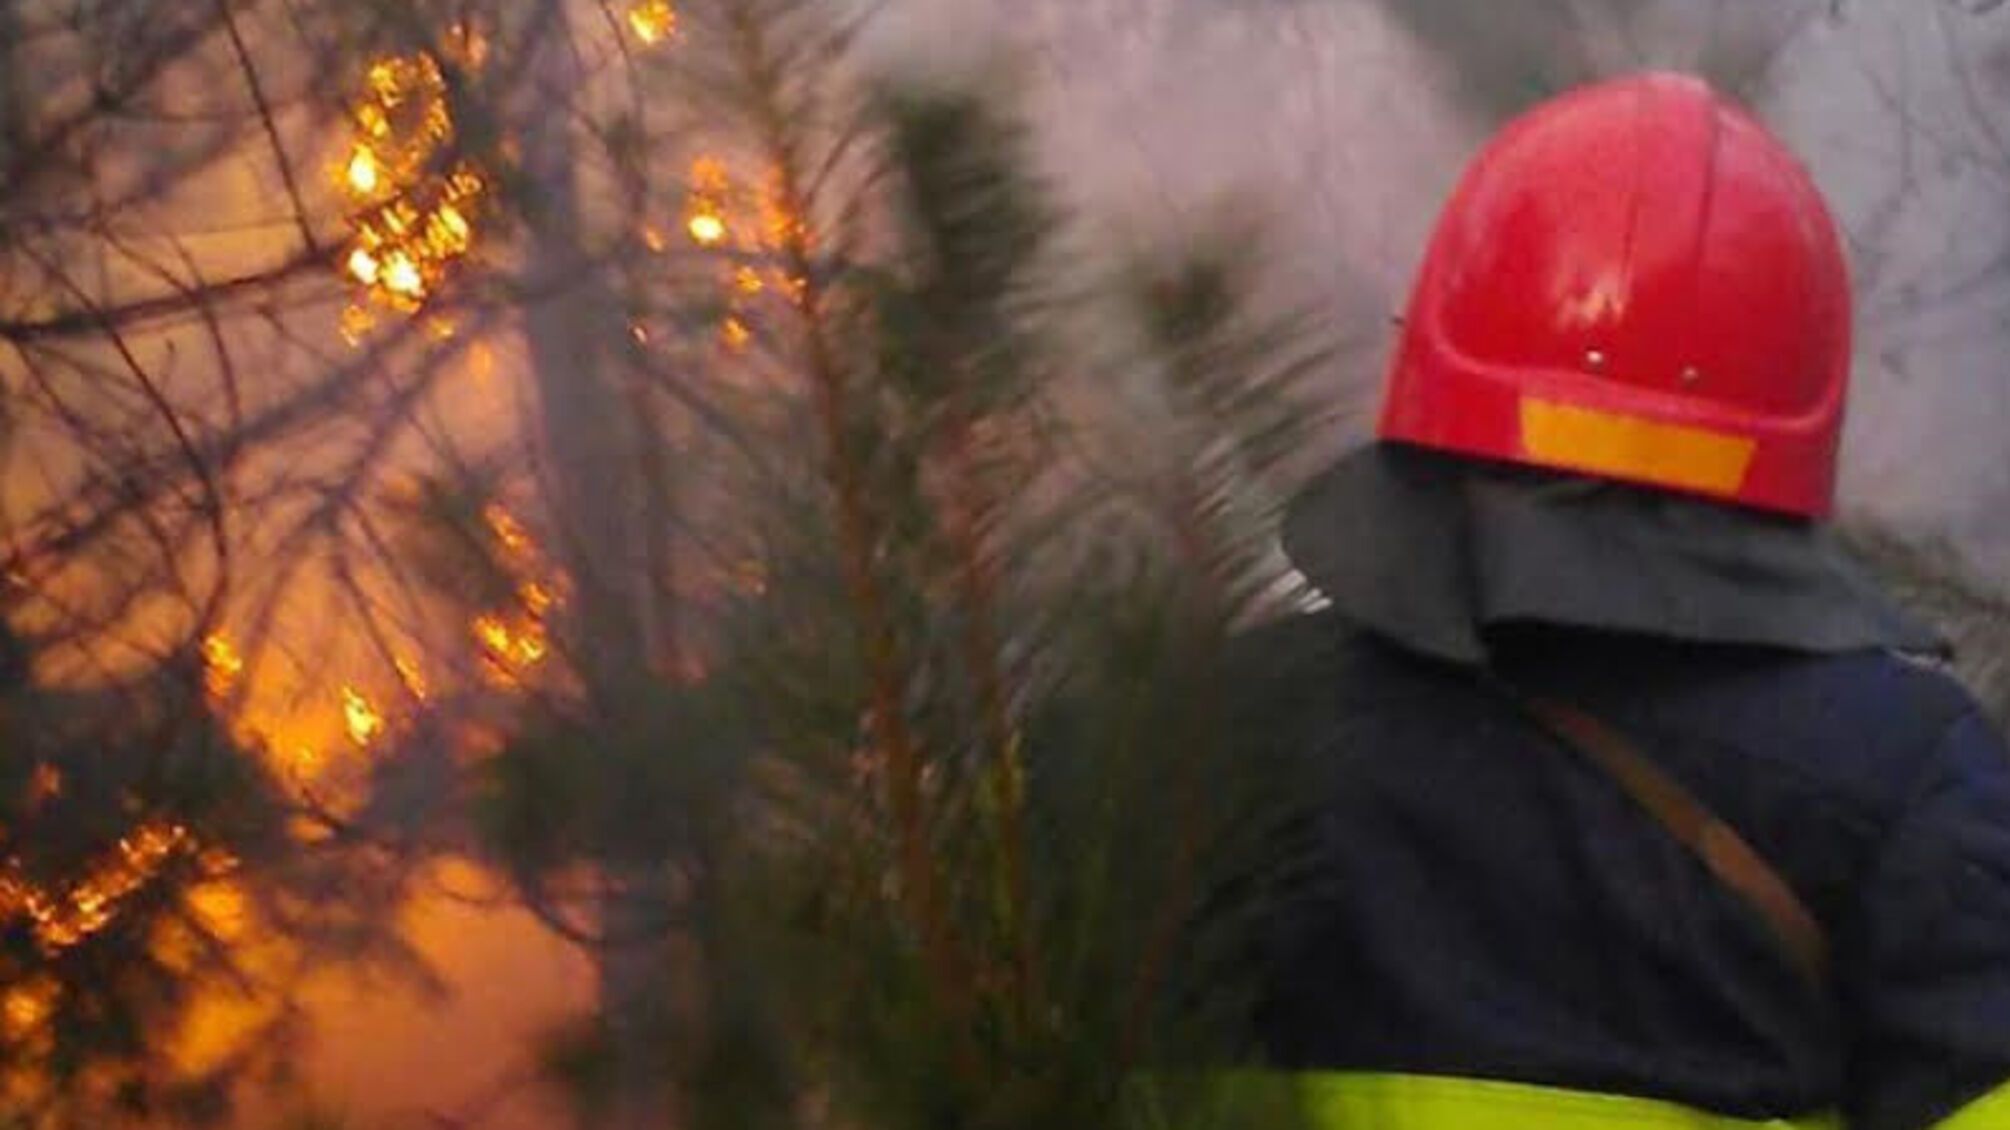 Полтавська область: за минулу добу вогнеборці ліквідували 21 пожежу на відкритій території та 1 лісову пожежу